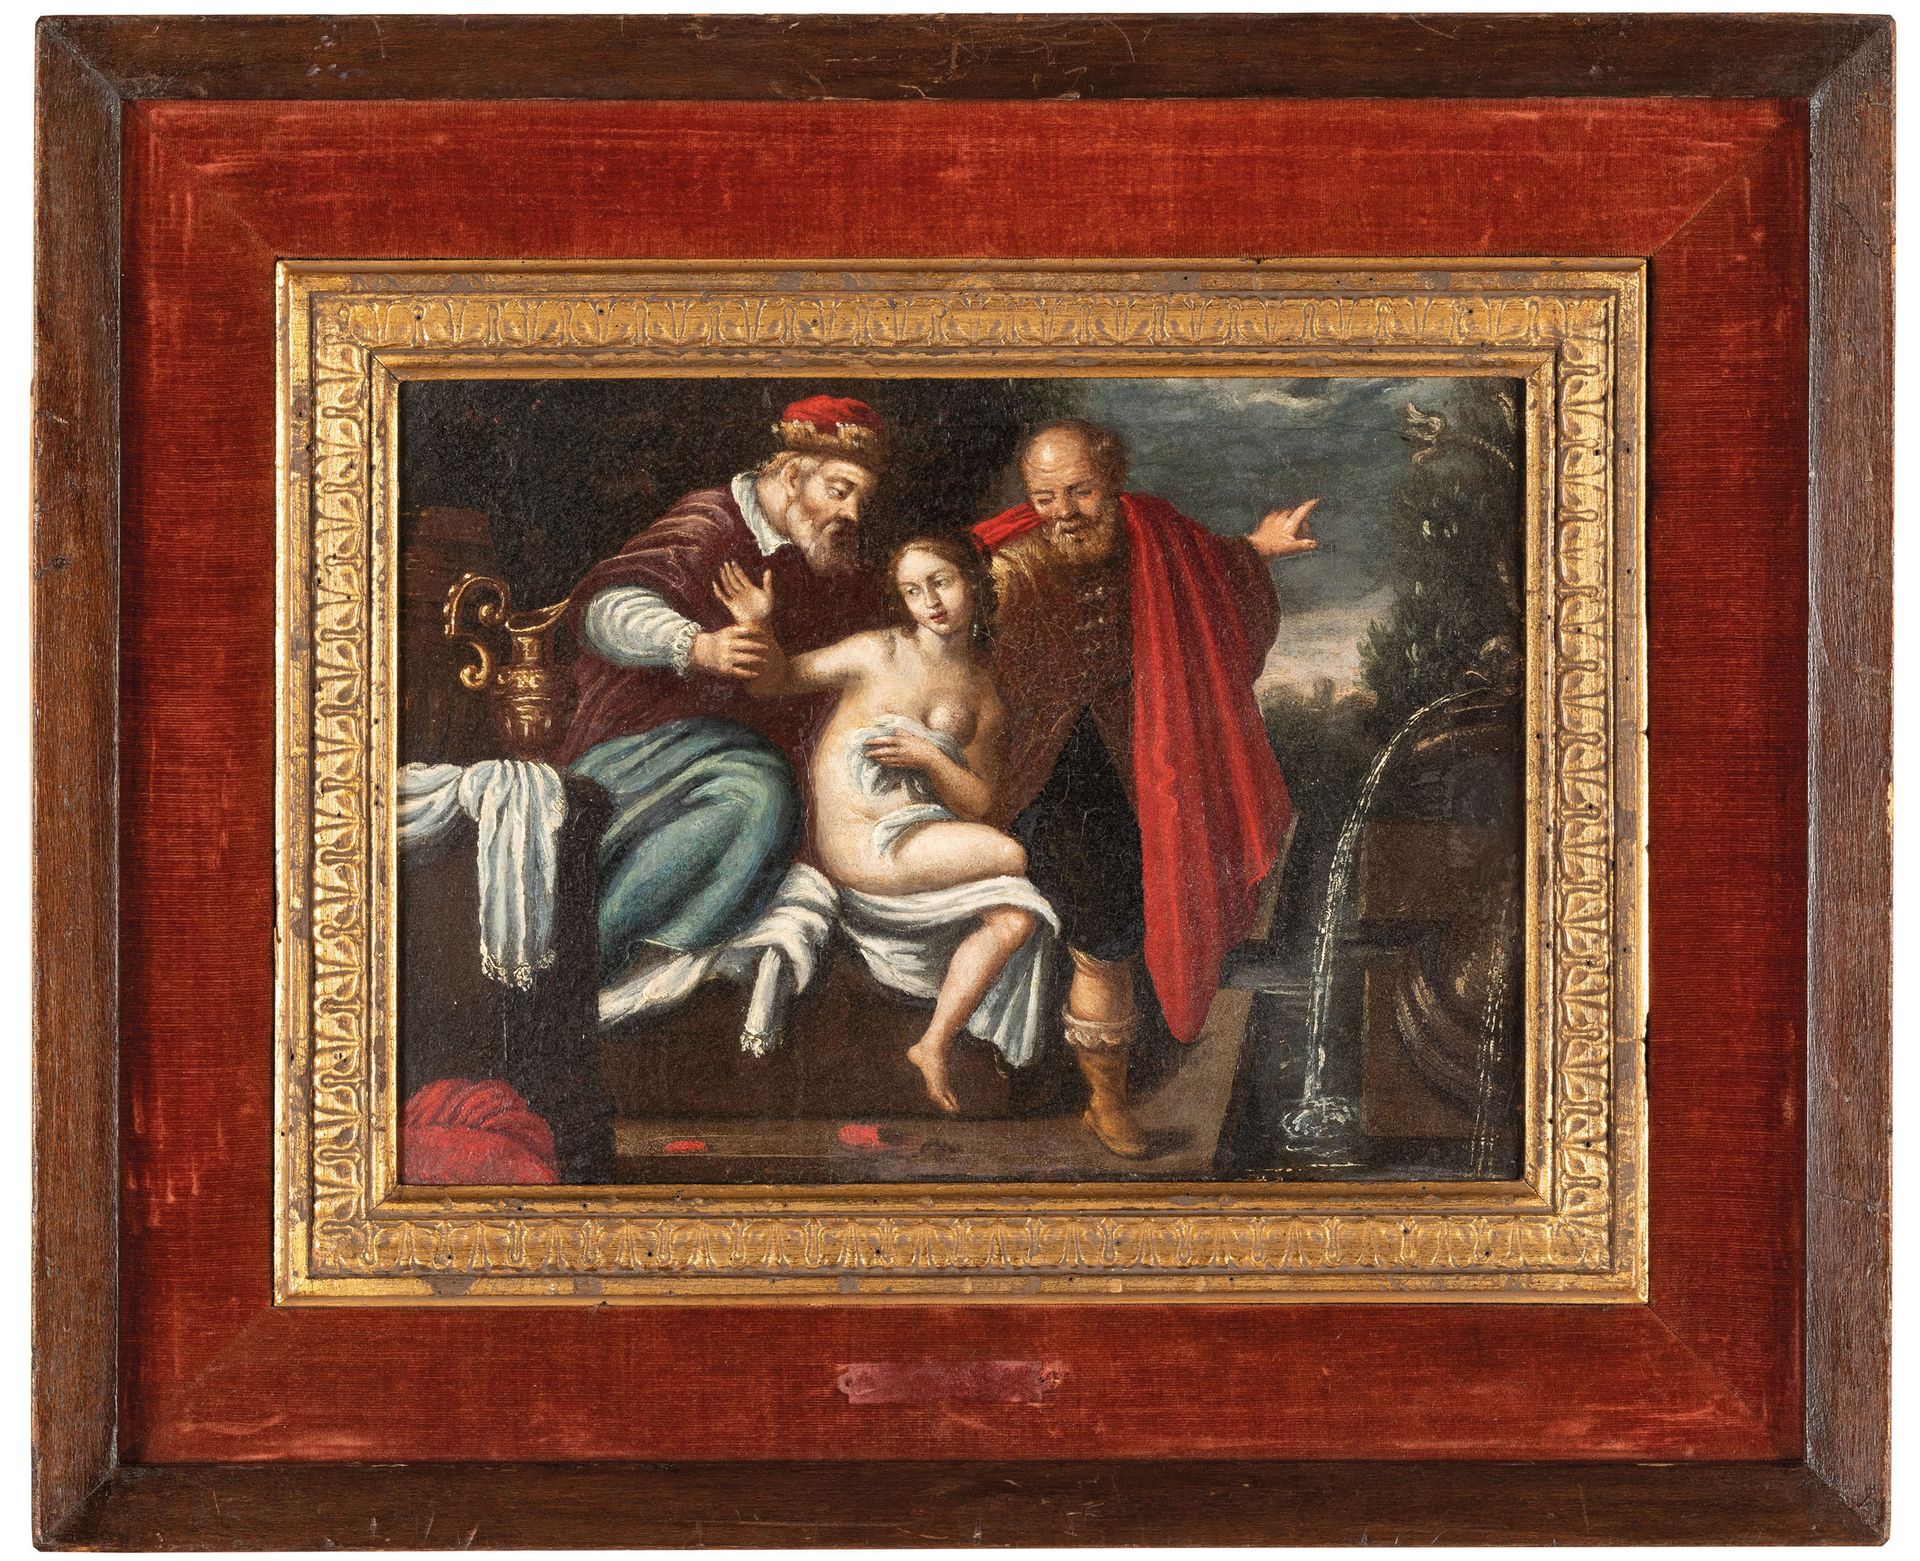 PIETRO MARCHESINI detto L'ORTOLANINO (Pistoia, 1692 - 1757)
Susanna e i vecchion&hellip;